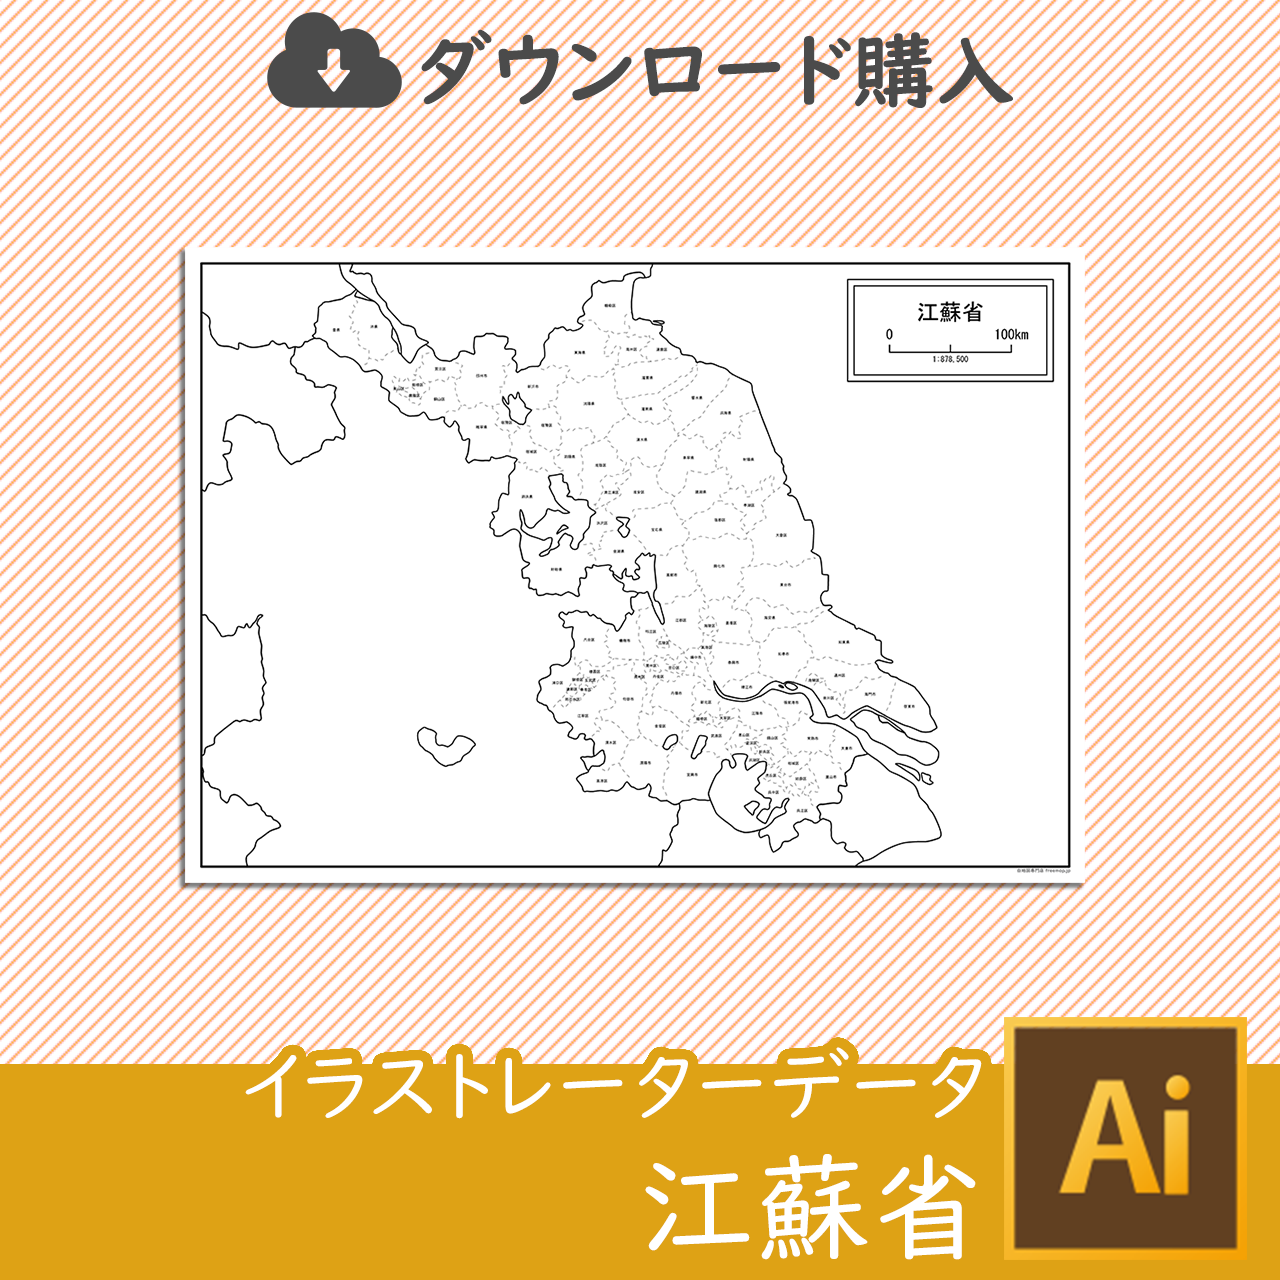 江蘇省の白地図データのサムネイル画像